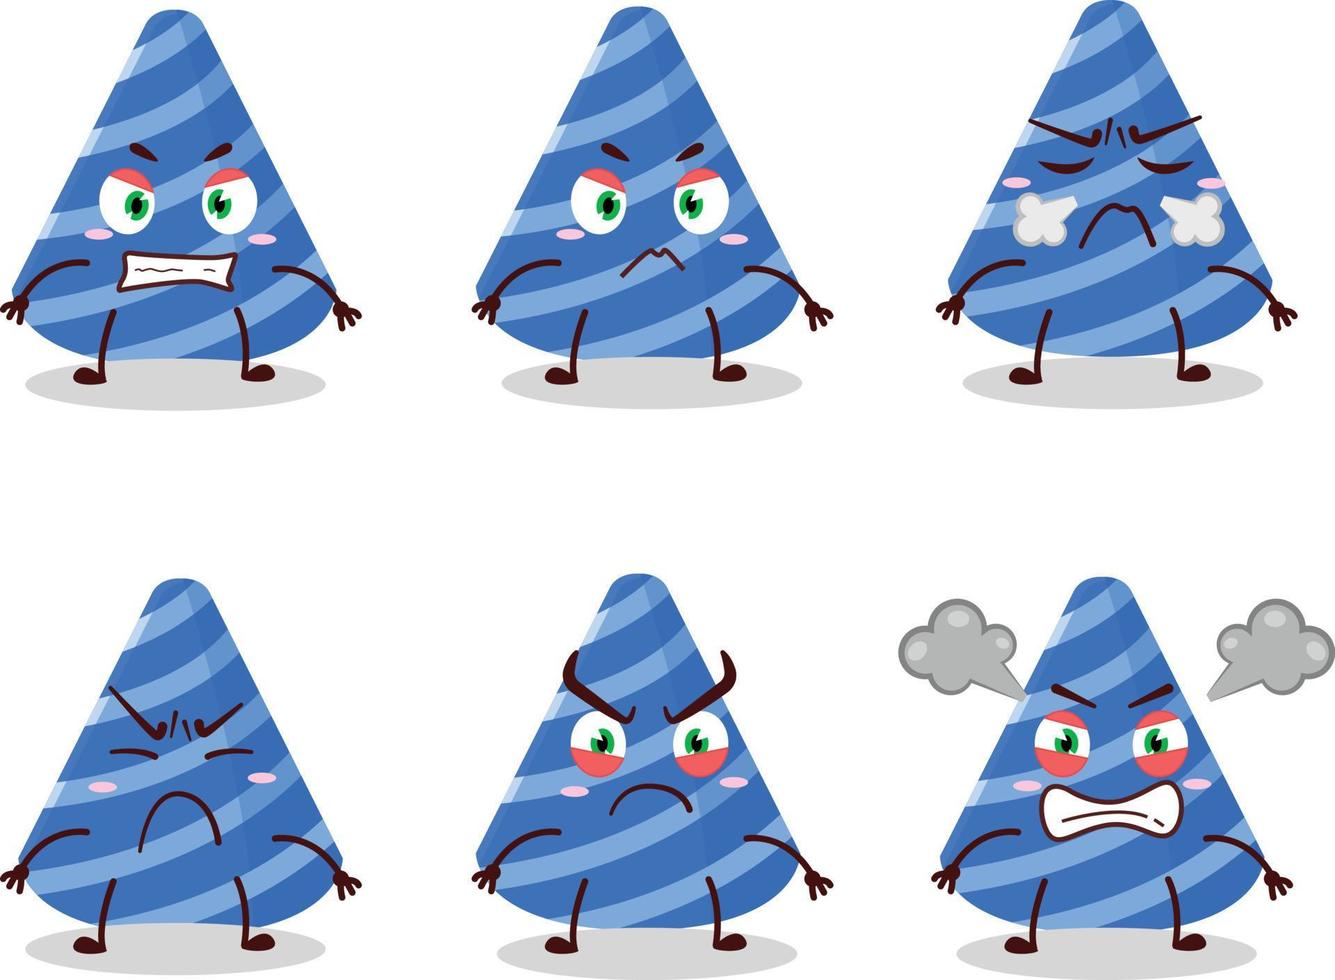 fest hatt tecknad serie karaktär med olika arg uttryck vektor